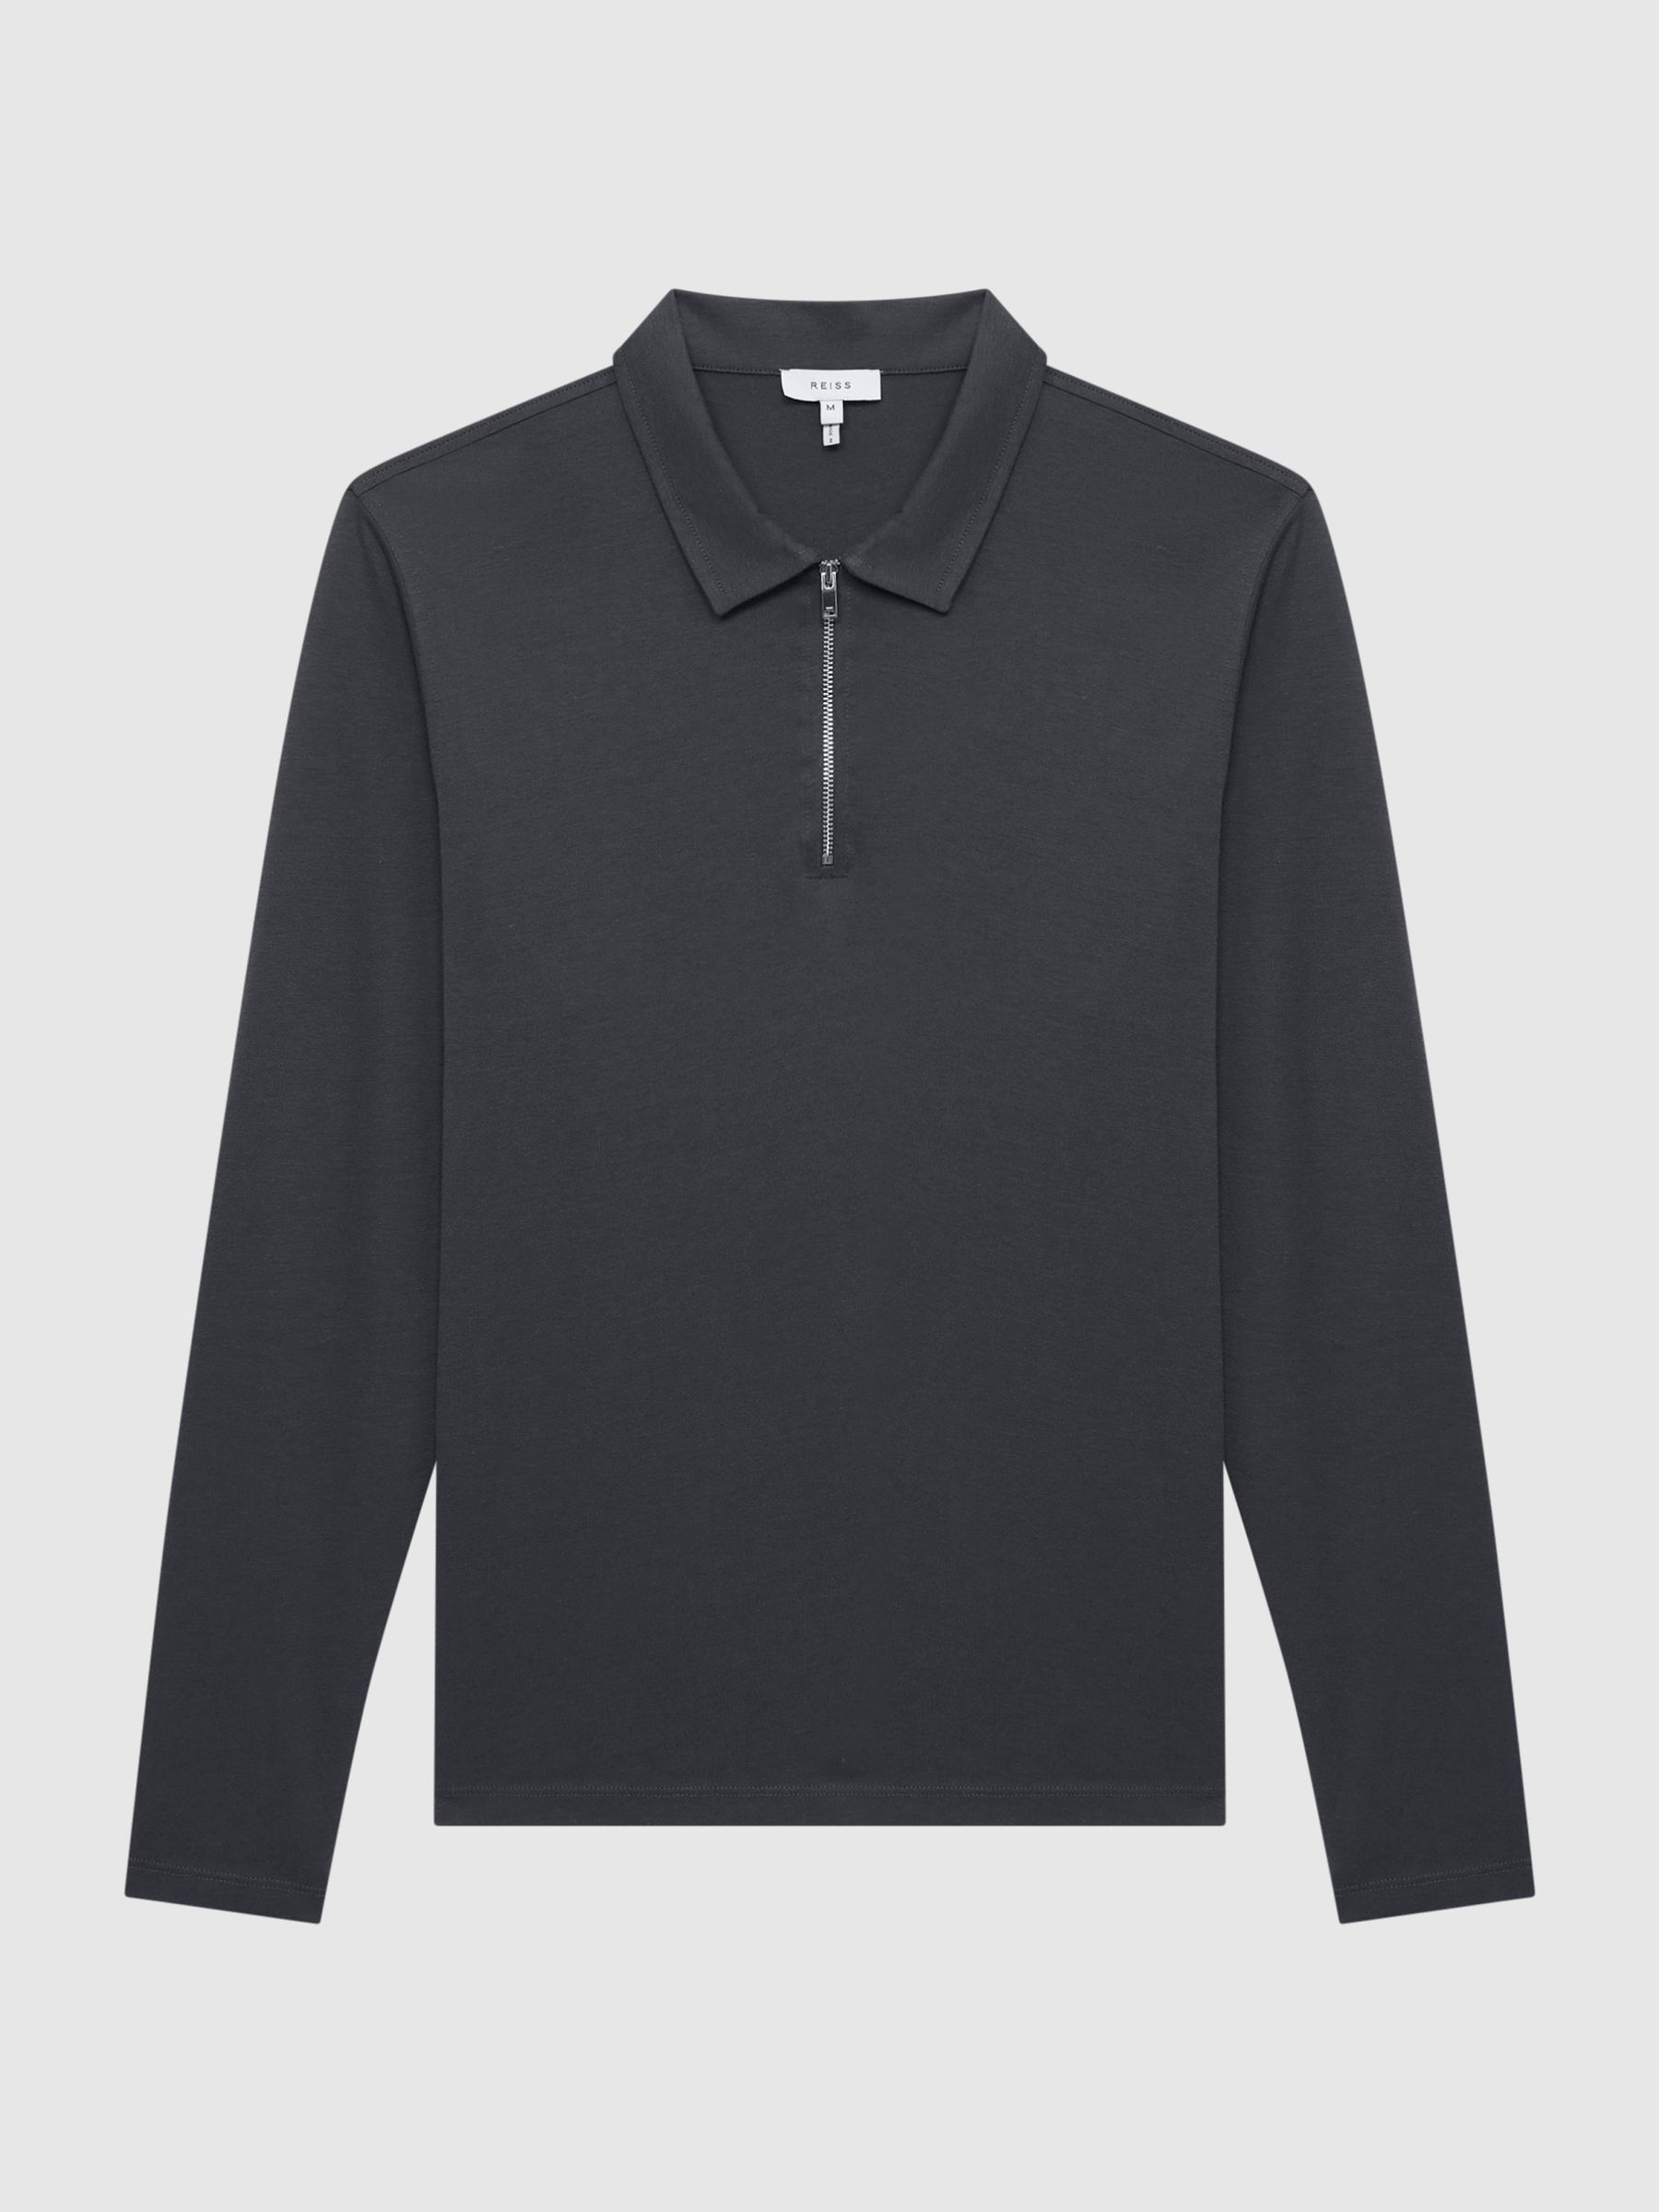 Reiss Rogue Textured Half Zip Long Sleeve Polo Shirt | REISS Australia